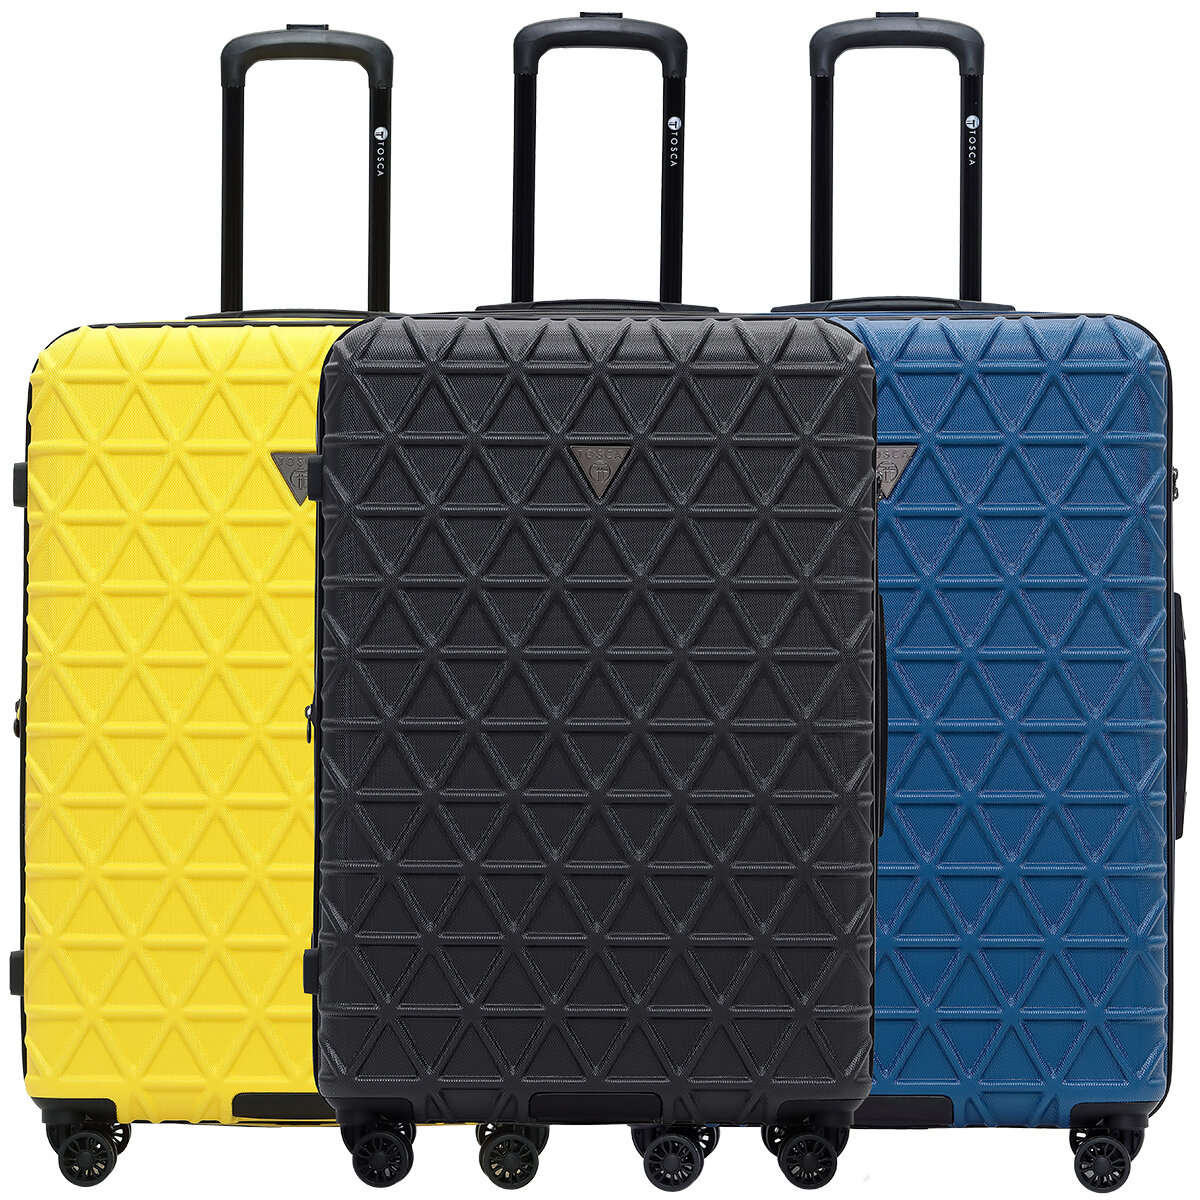 Tosca Trition Expandable Hardshell Luggage